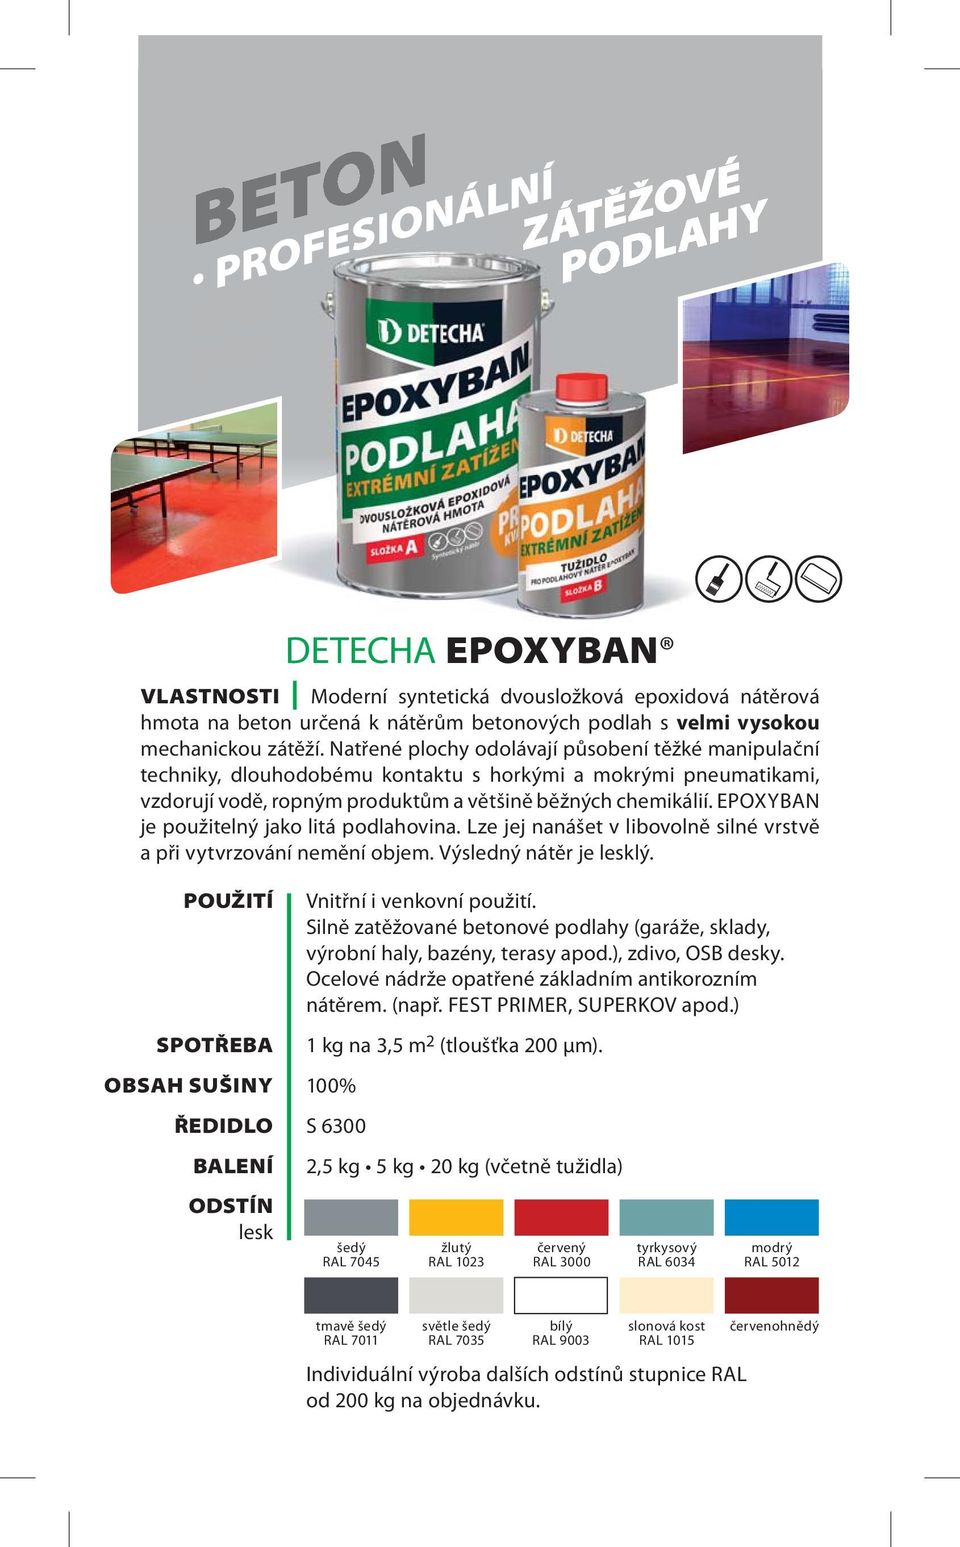 EPOXYBAN je použitelný jako litá podlahovina. Lze jej nanášet v libovolně silné vrstvě a při vytvrzování nemění objem. Výsledný nátěr je lesklý. OBSAH SUŠINY lesk Vnitřní i venkovní použití.